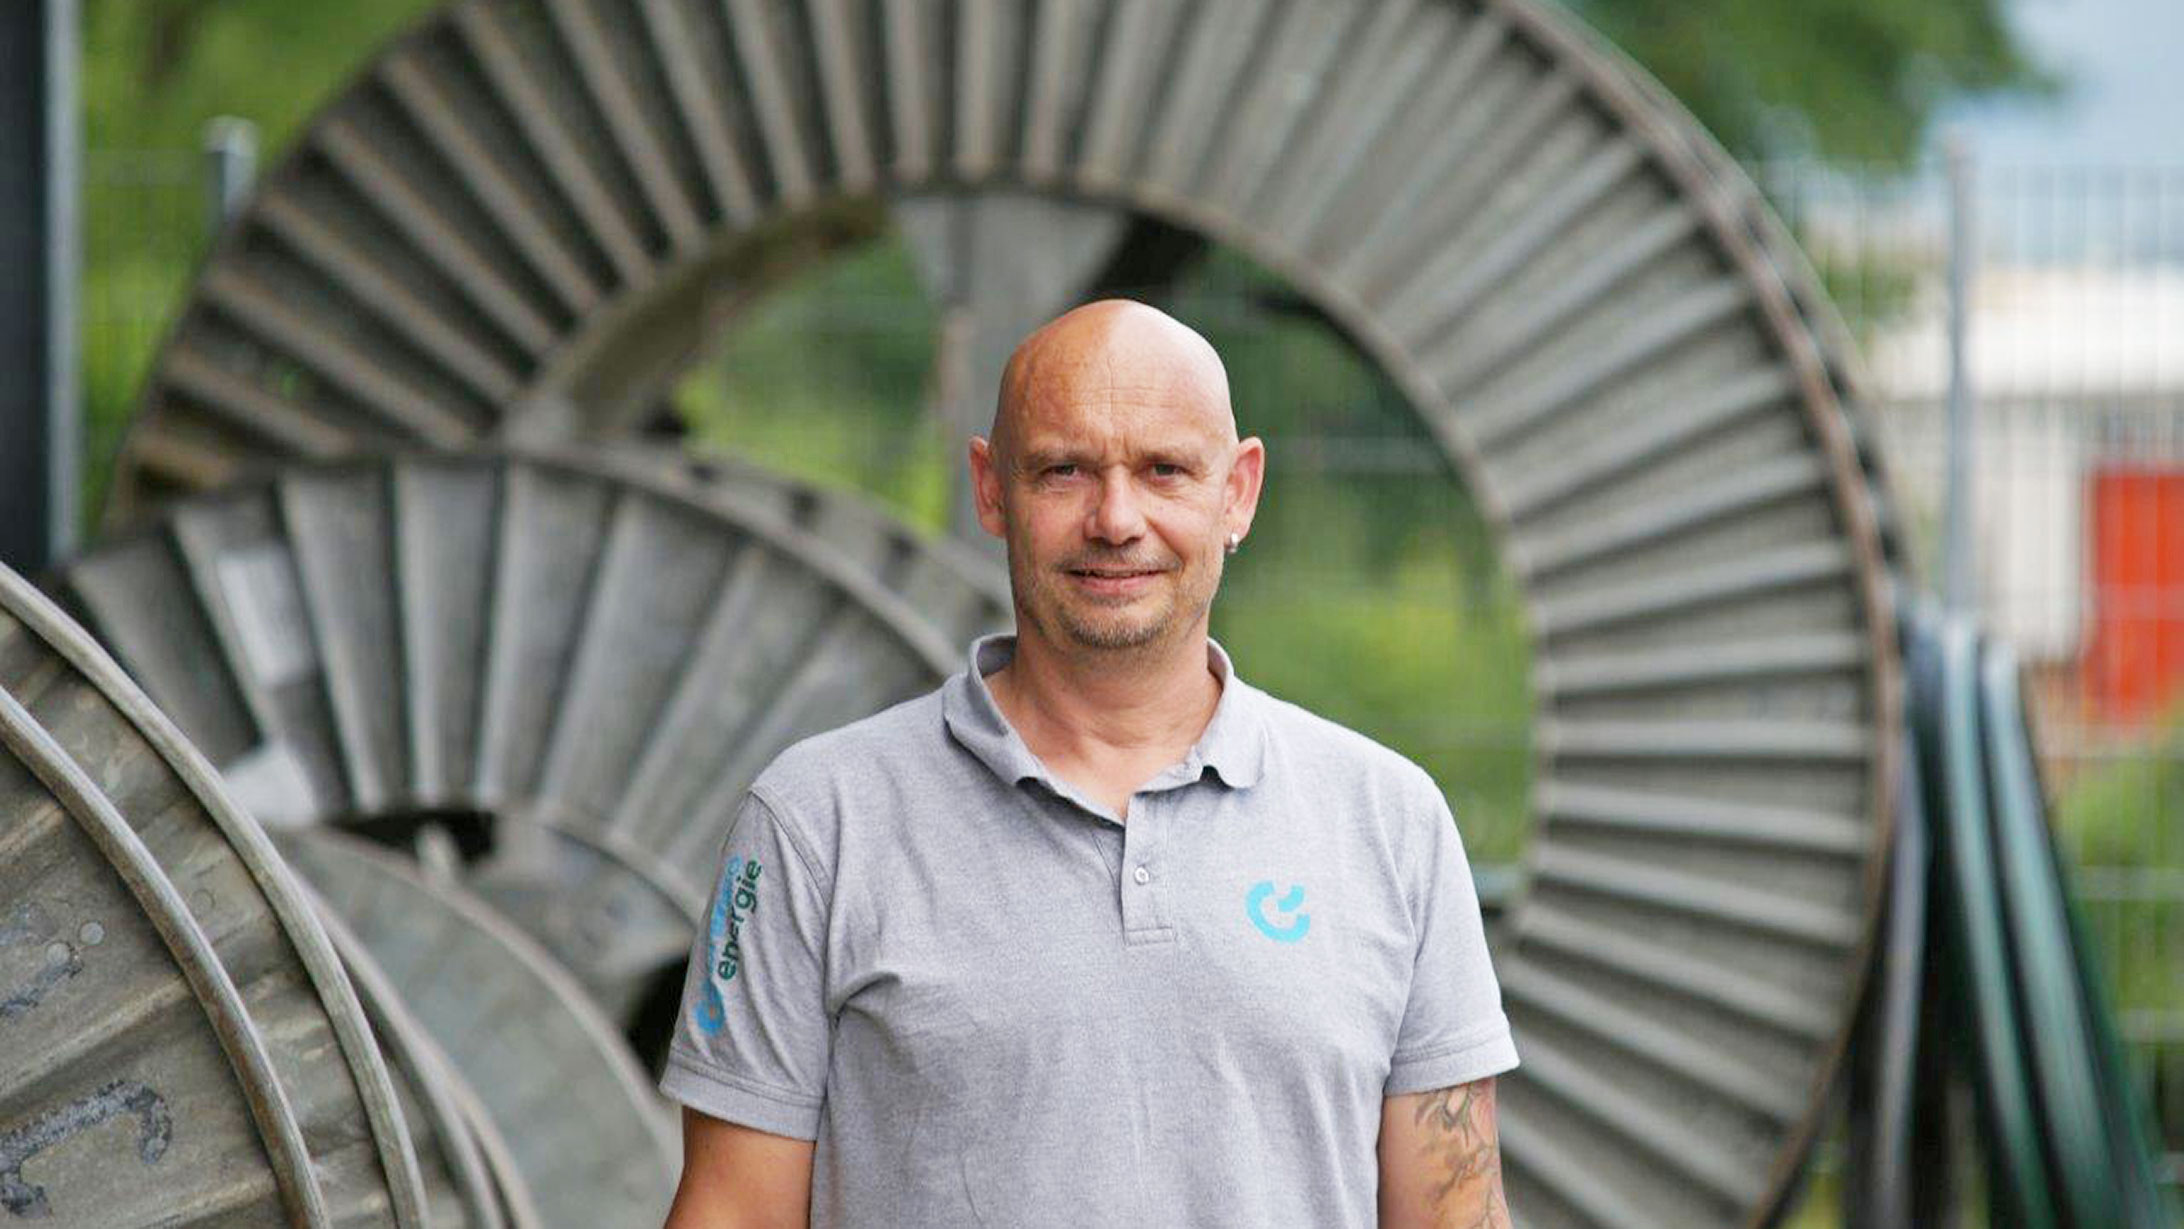 Thomas Kohler, Lernendenbetreuer bei Primeo Energie, steht vor einer grossen Kabelrolle.